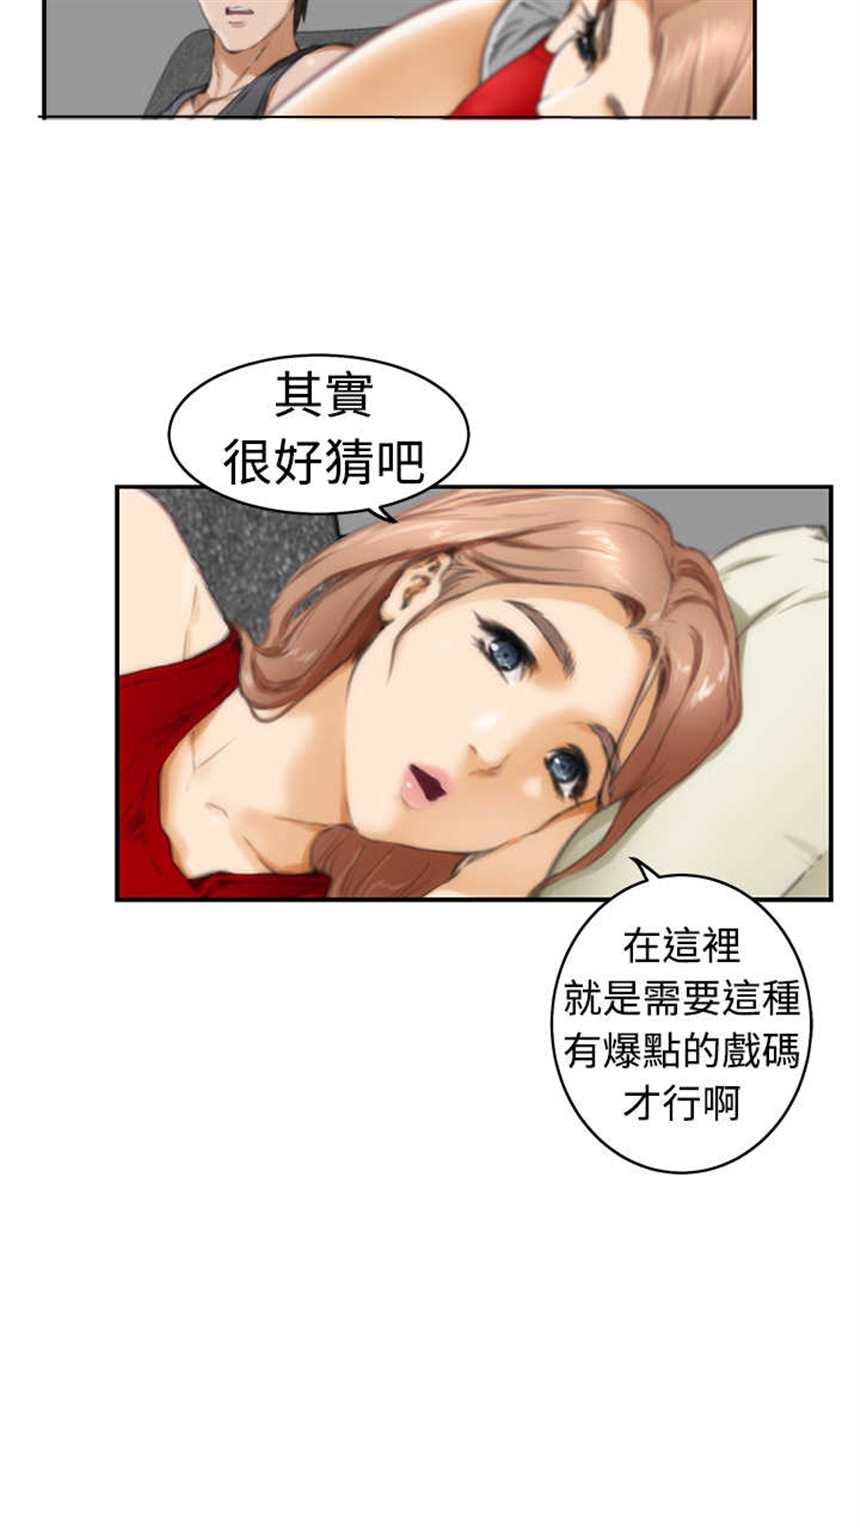 韩国漫画《爱上男闺蜜》全集完第18话(点击浏览下一张趣图)